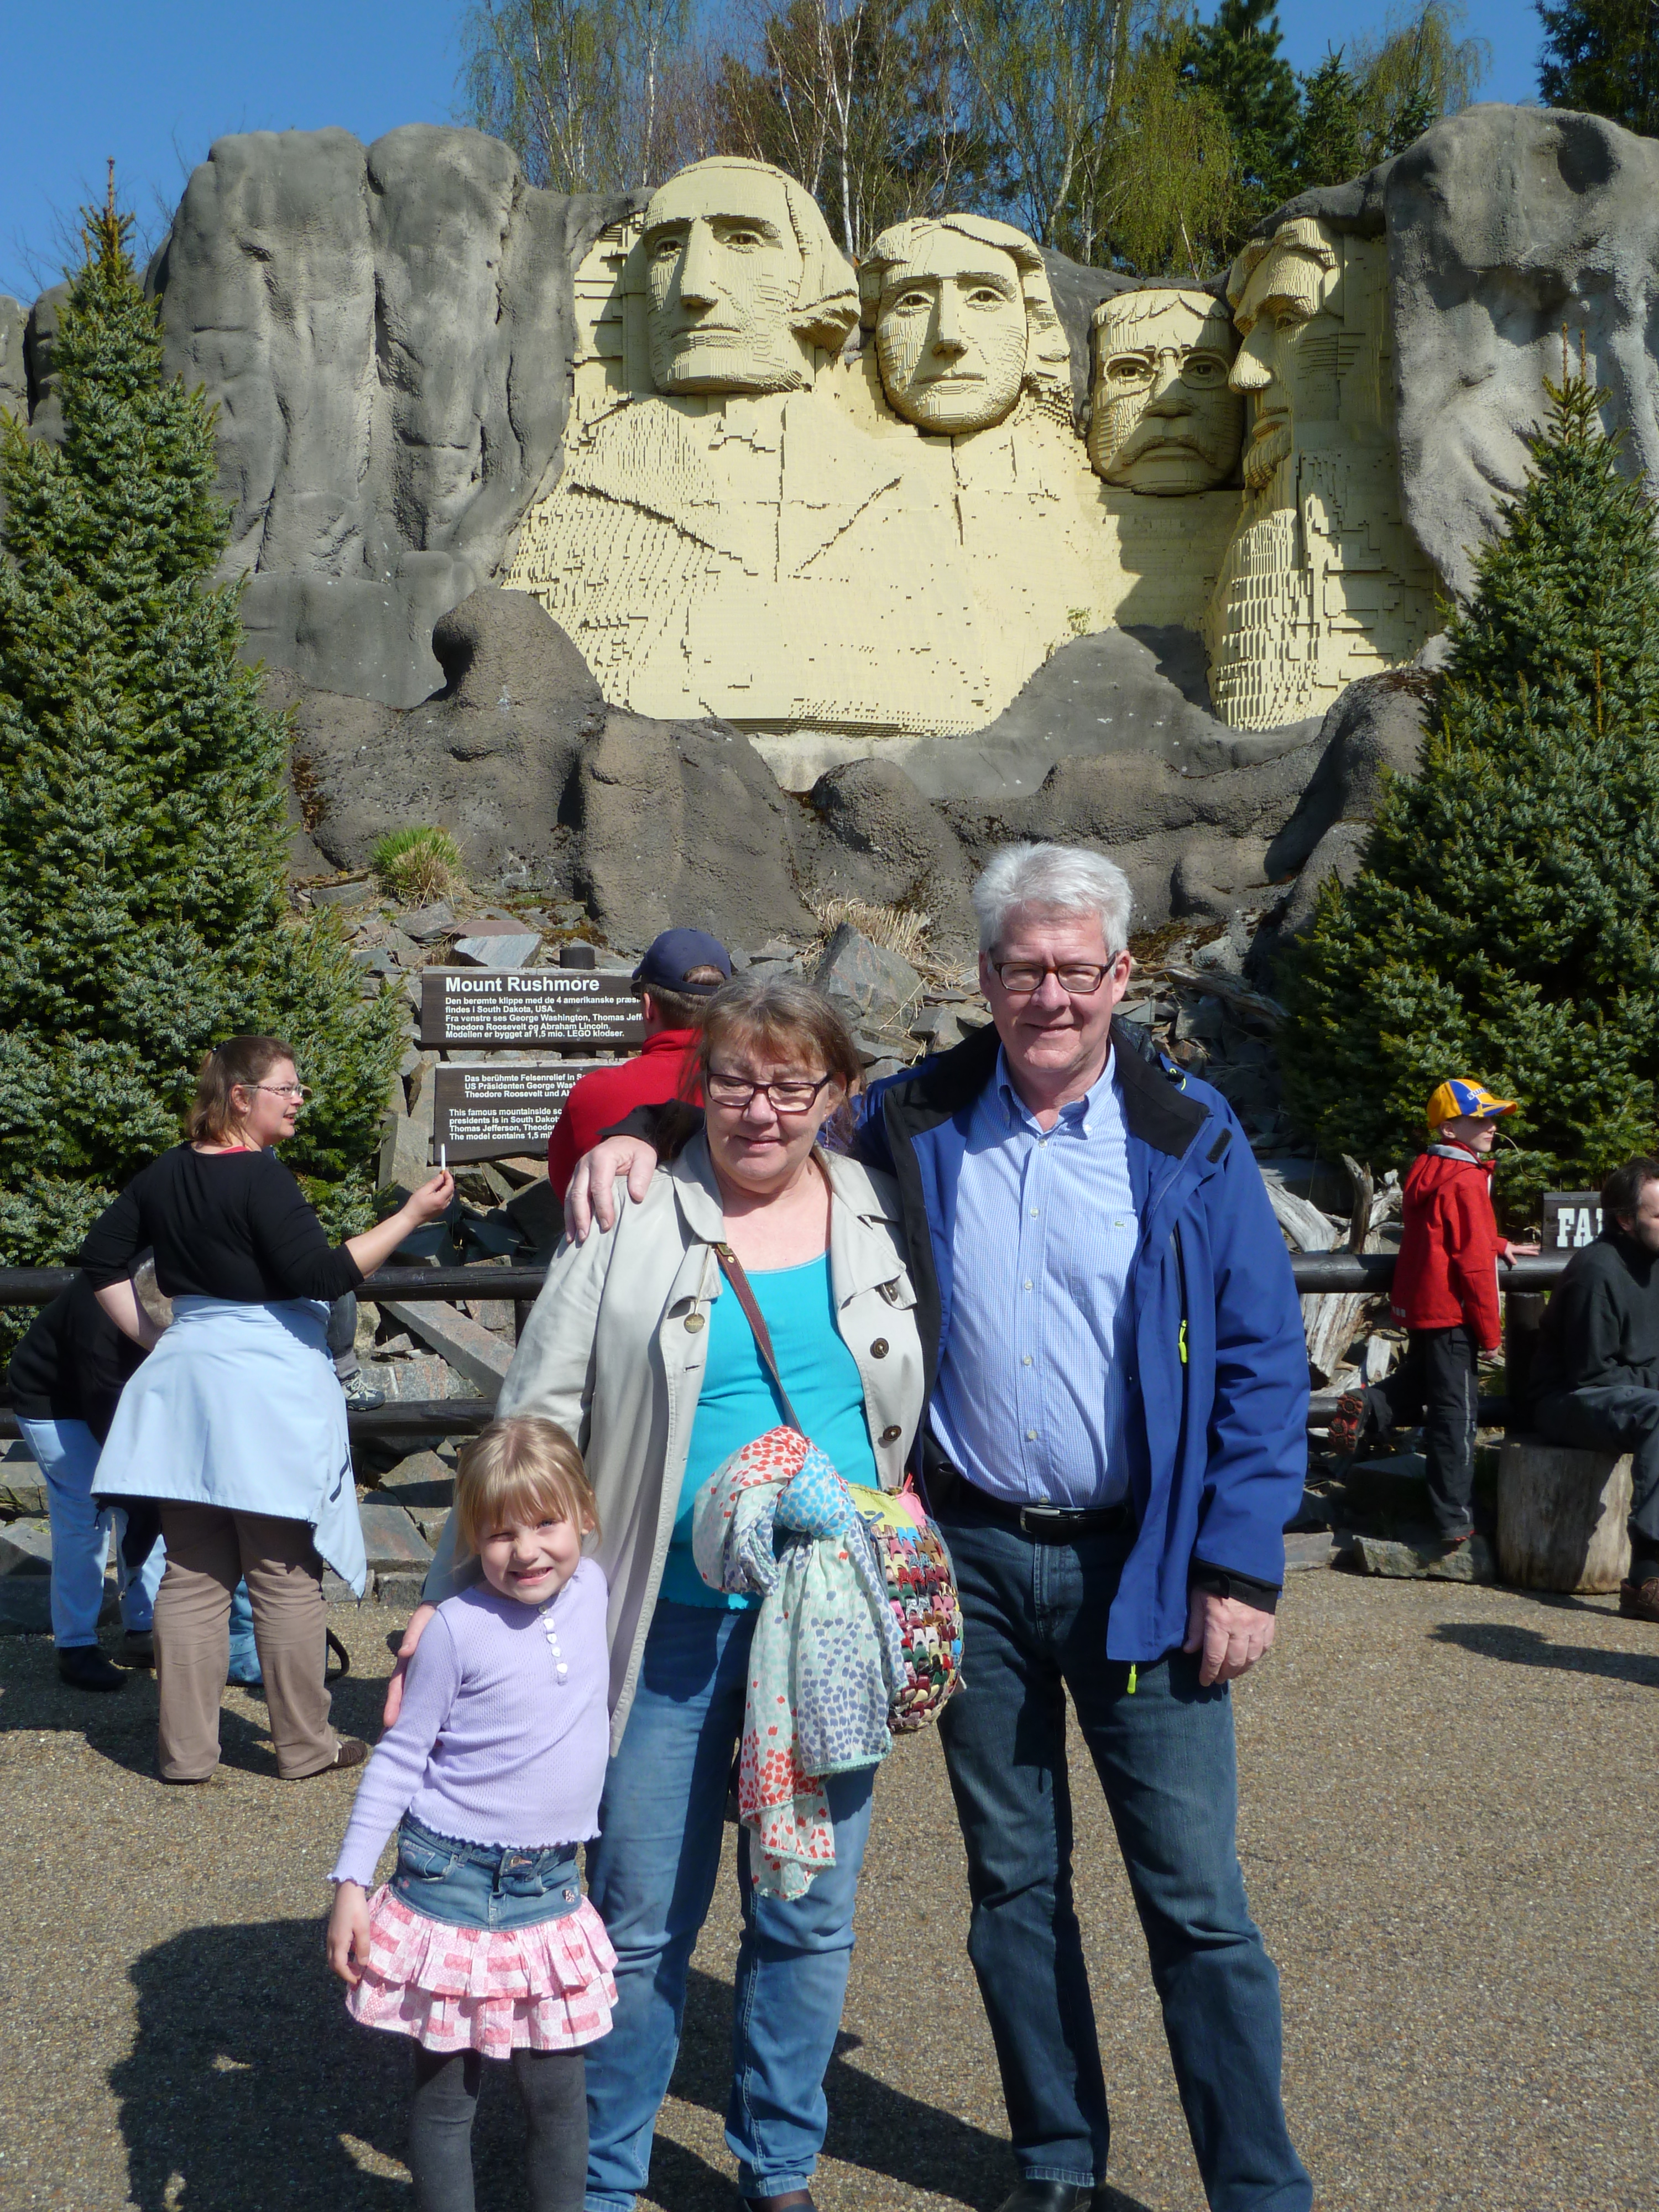 Her er vi med Mount Rushmore i baggrunden med de amerikanske præsidenter hugget ud i klipperne.